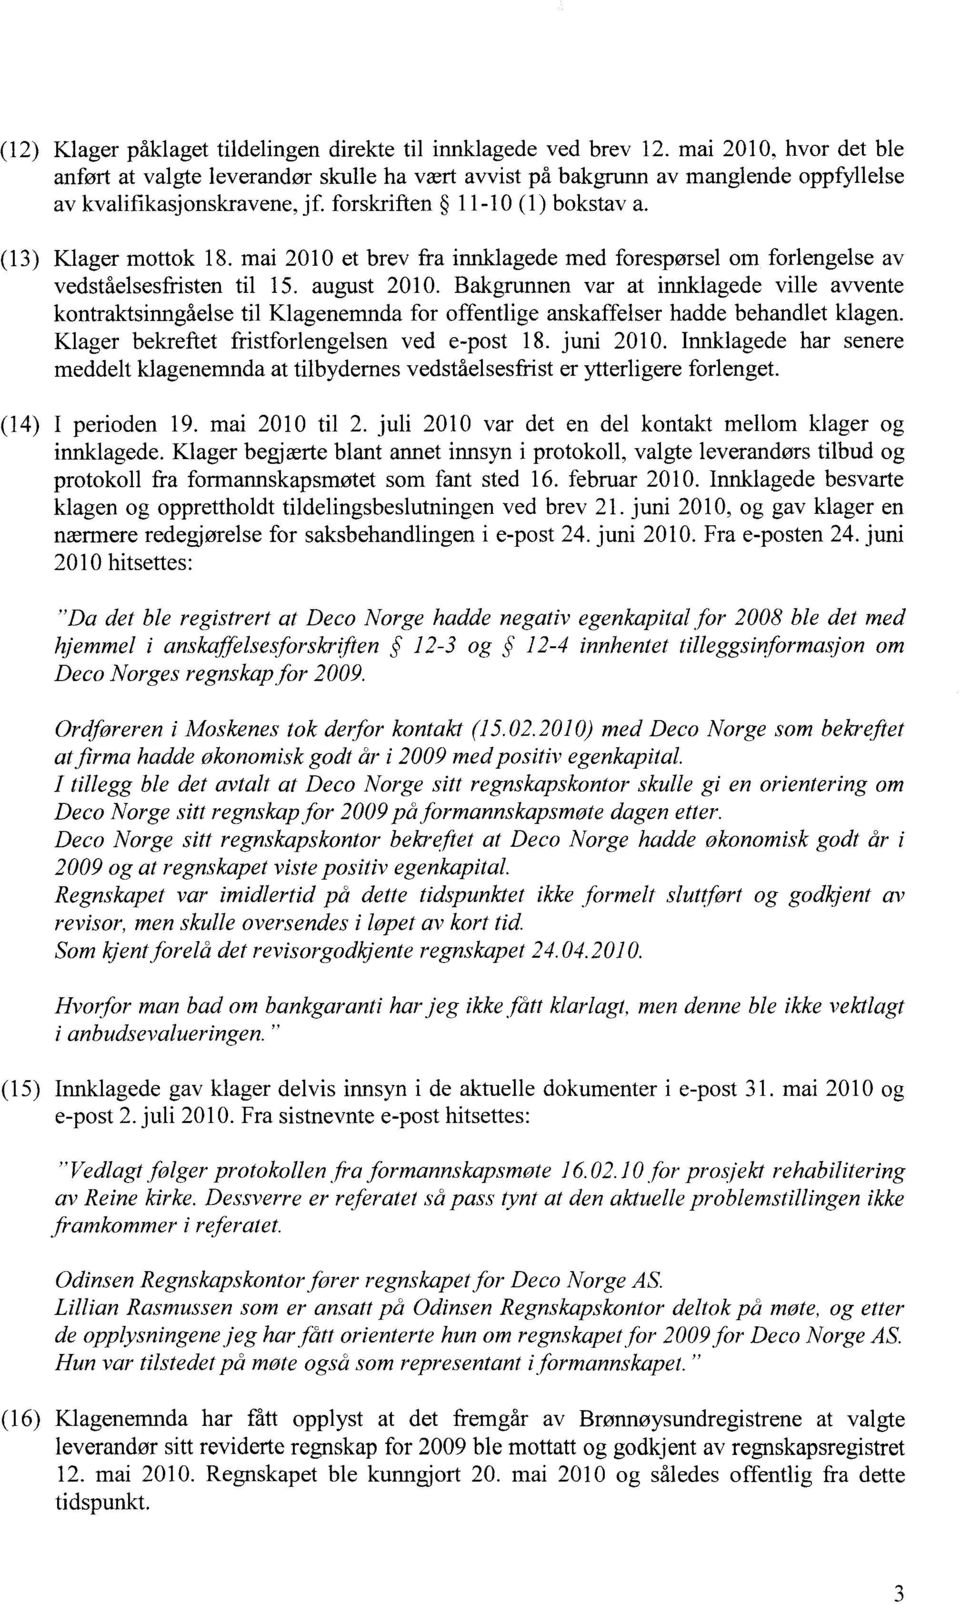 mai 2010 et brev fra innklagede med forespørsel om forlengelse av vedståelsesfristen til 15. august 2010.